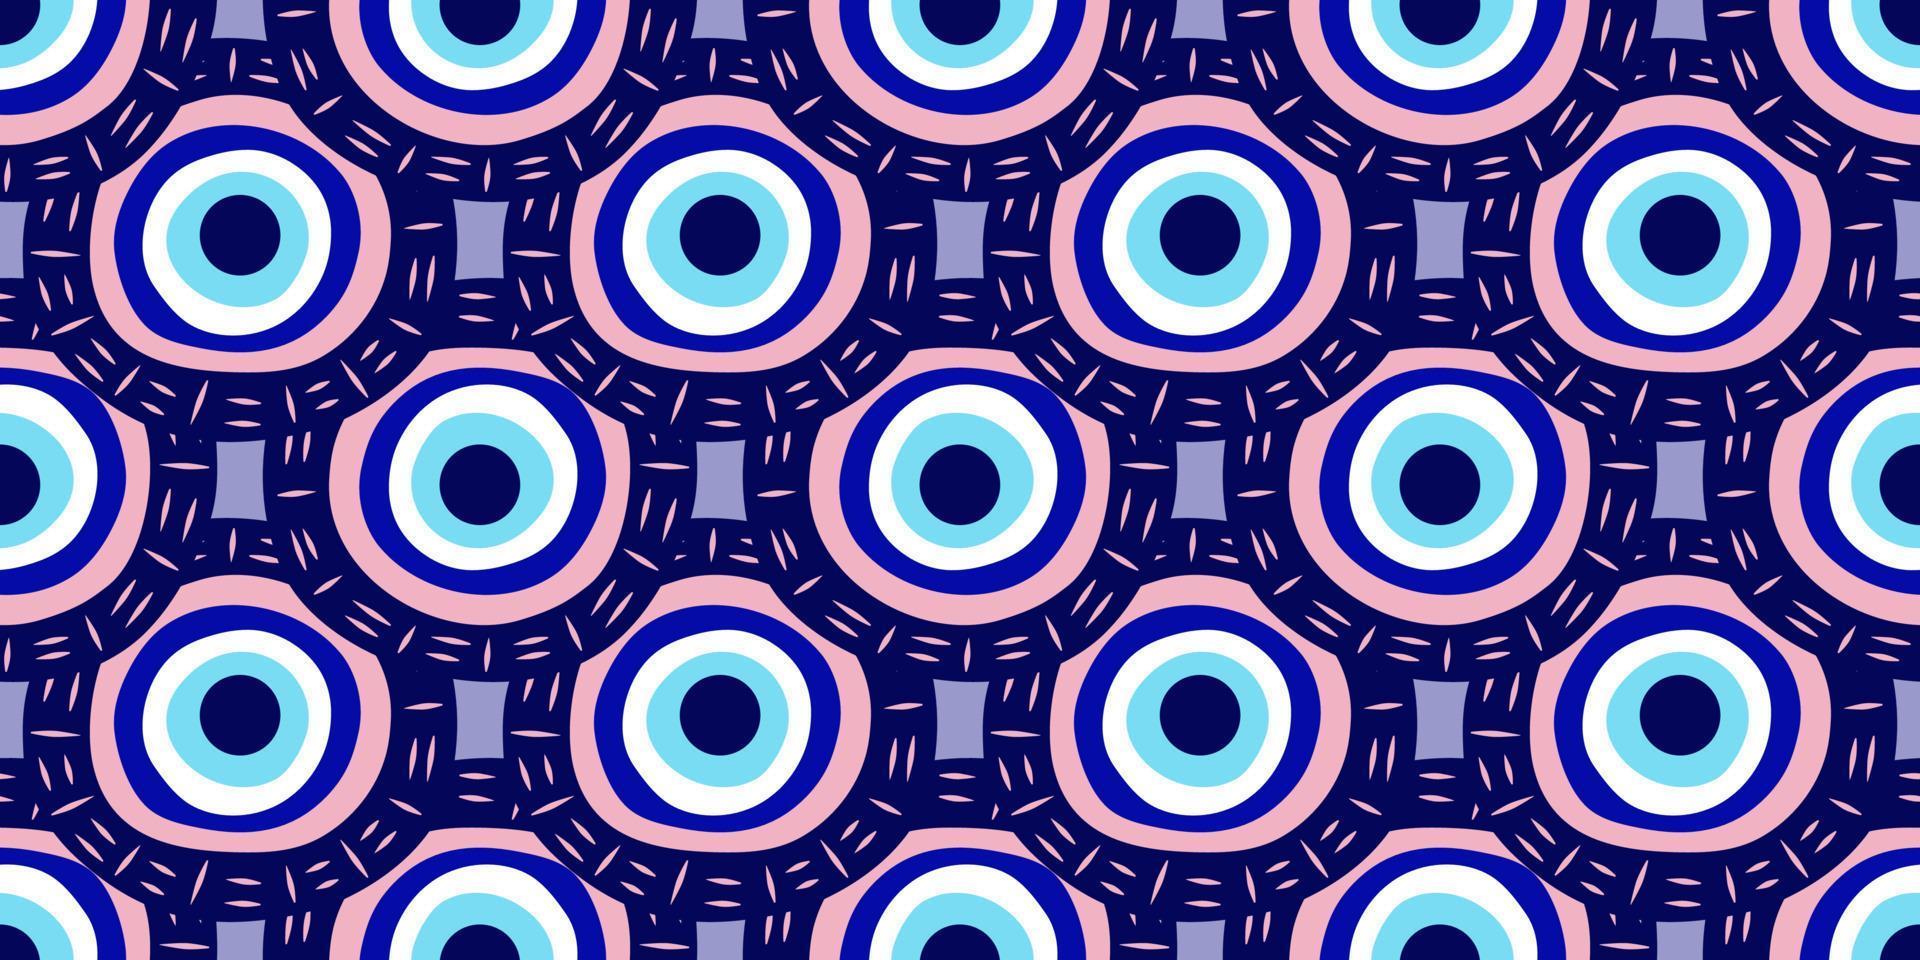 modello senza cuciture amuleto turco occhio greco. occhio blu turco per amuleto e protezione in uno schema infinito. illustrazione vettoriale in uno stile piatto.